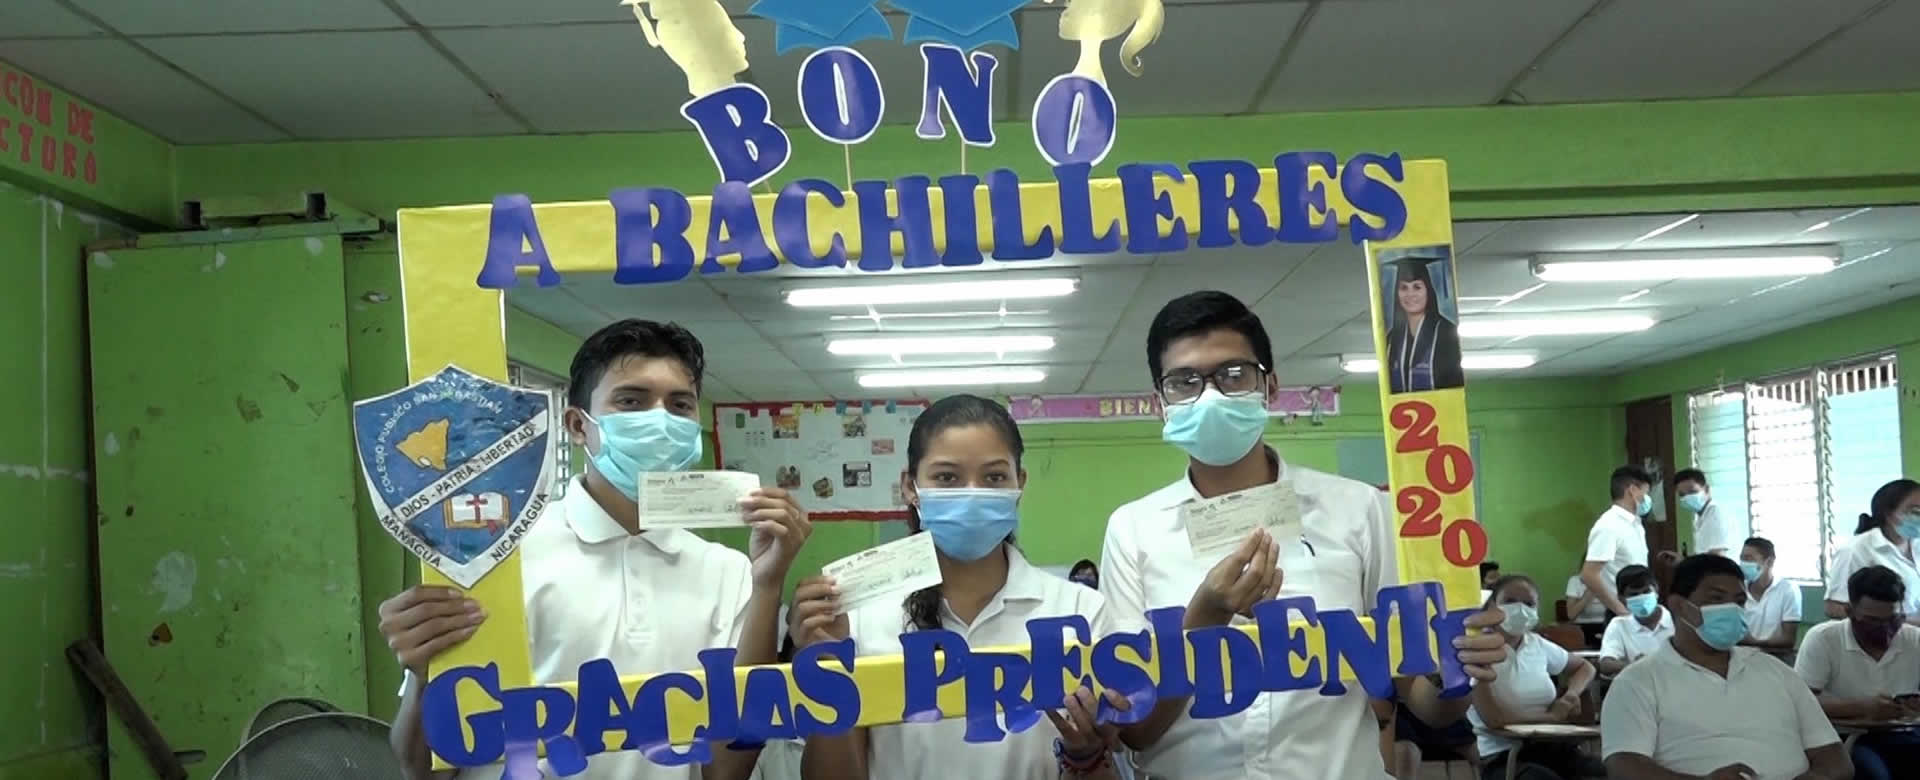 Bachilleres de Managua solventan gastos de promoción gracias al Gobierno Sandinista